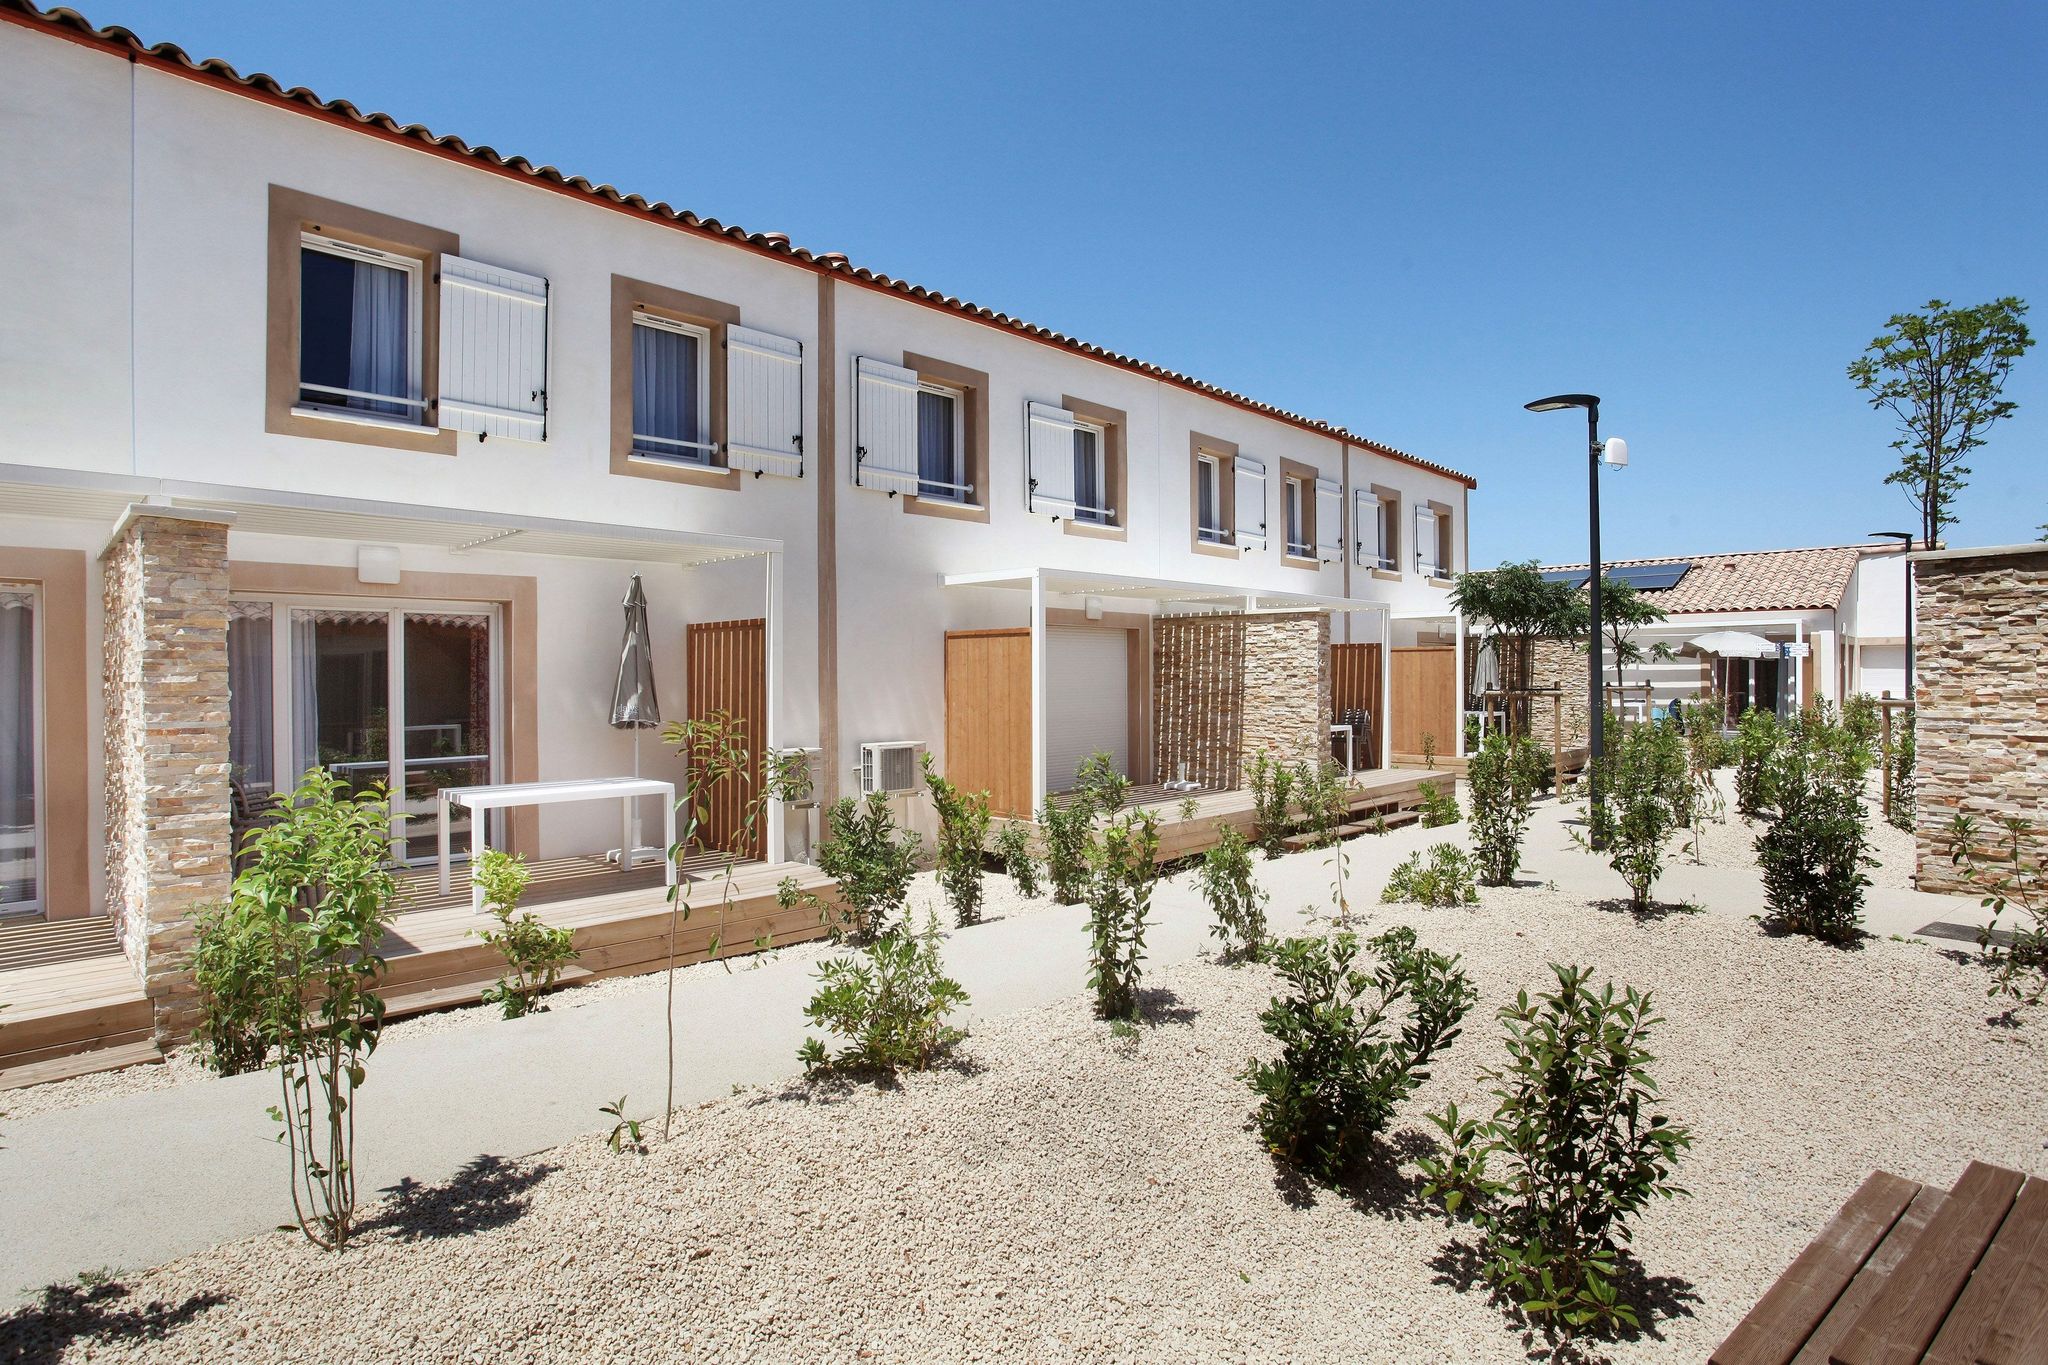 Schön gepflegte Wohnung in der Nähe der historischen Aigues-Mortes